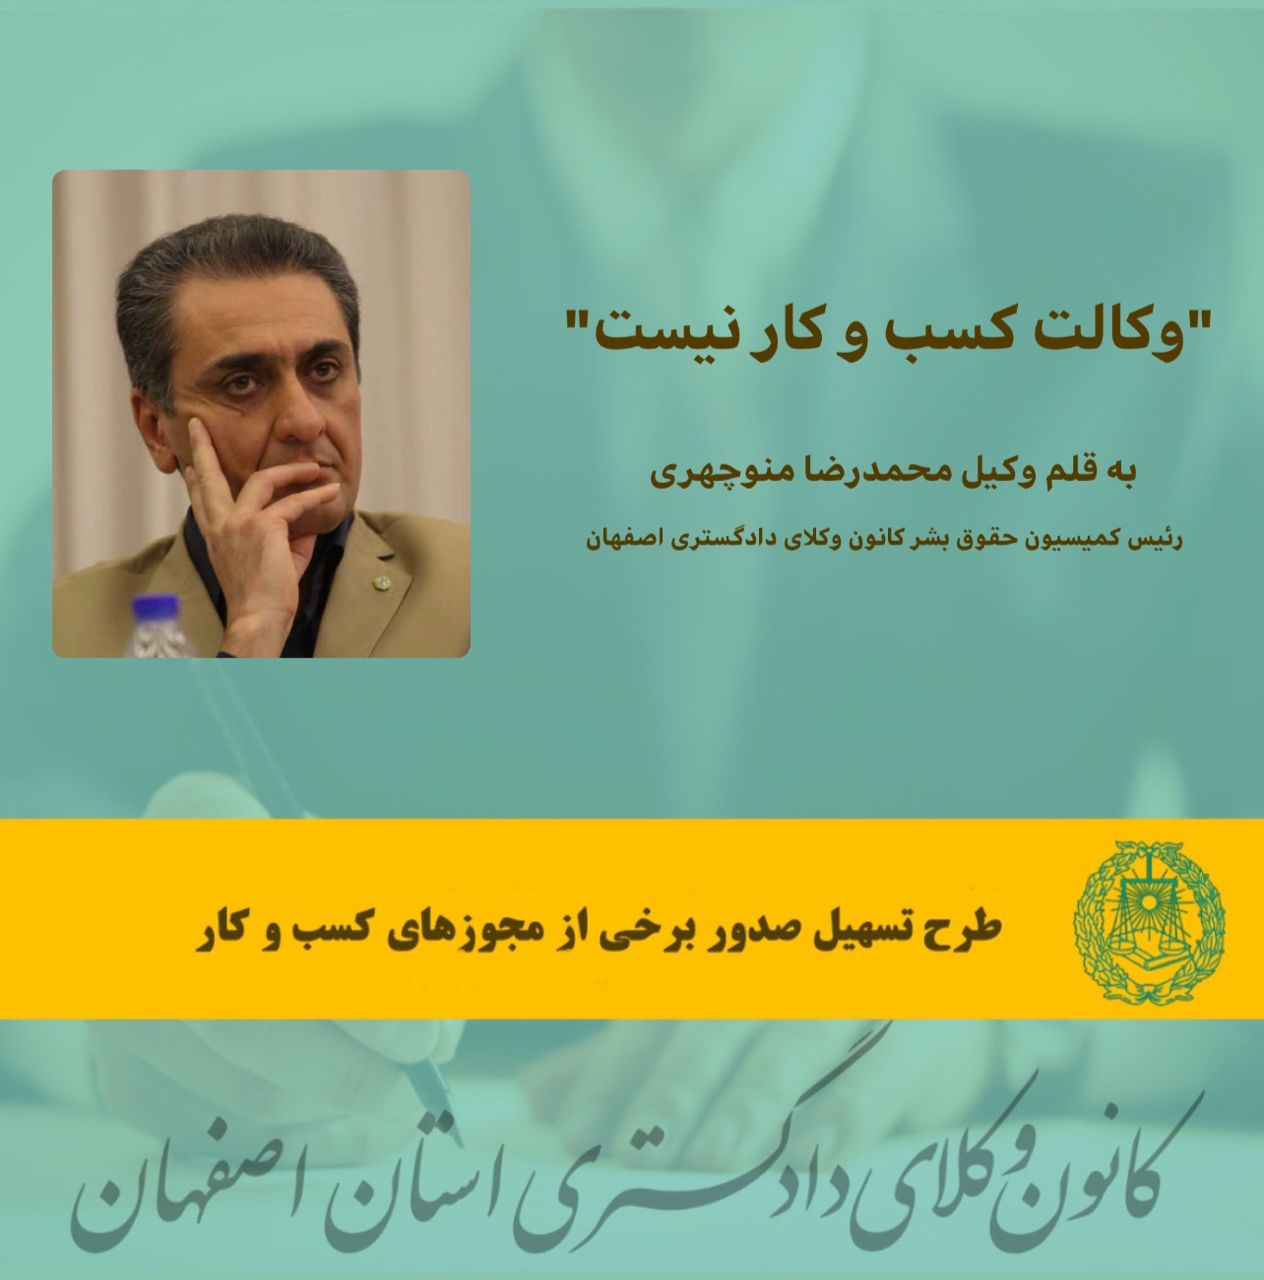 "وکالت کسب و کار نیست" به قلم  وکیل محمدرضا منوچهری؛ رئیس کمیسیون حقوق بشر کانون وکلای دادگستری اصفهان